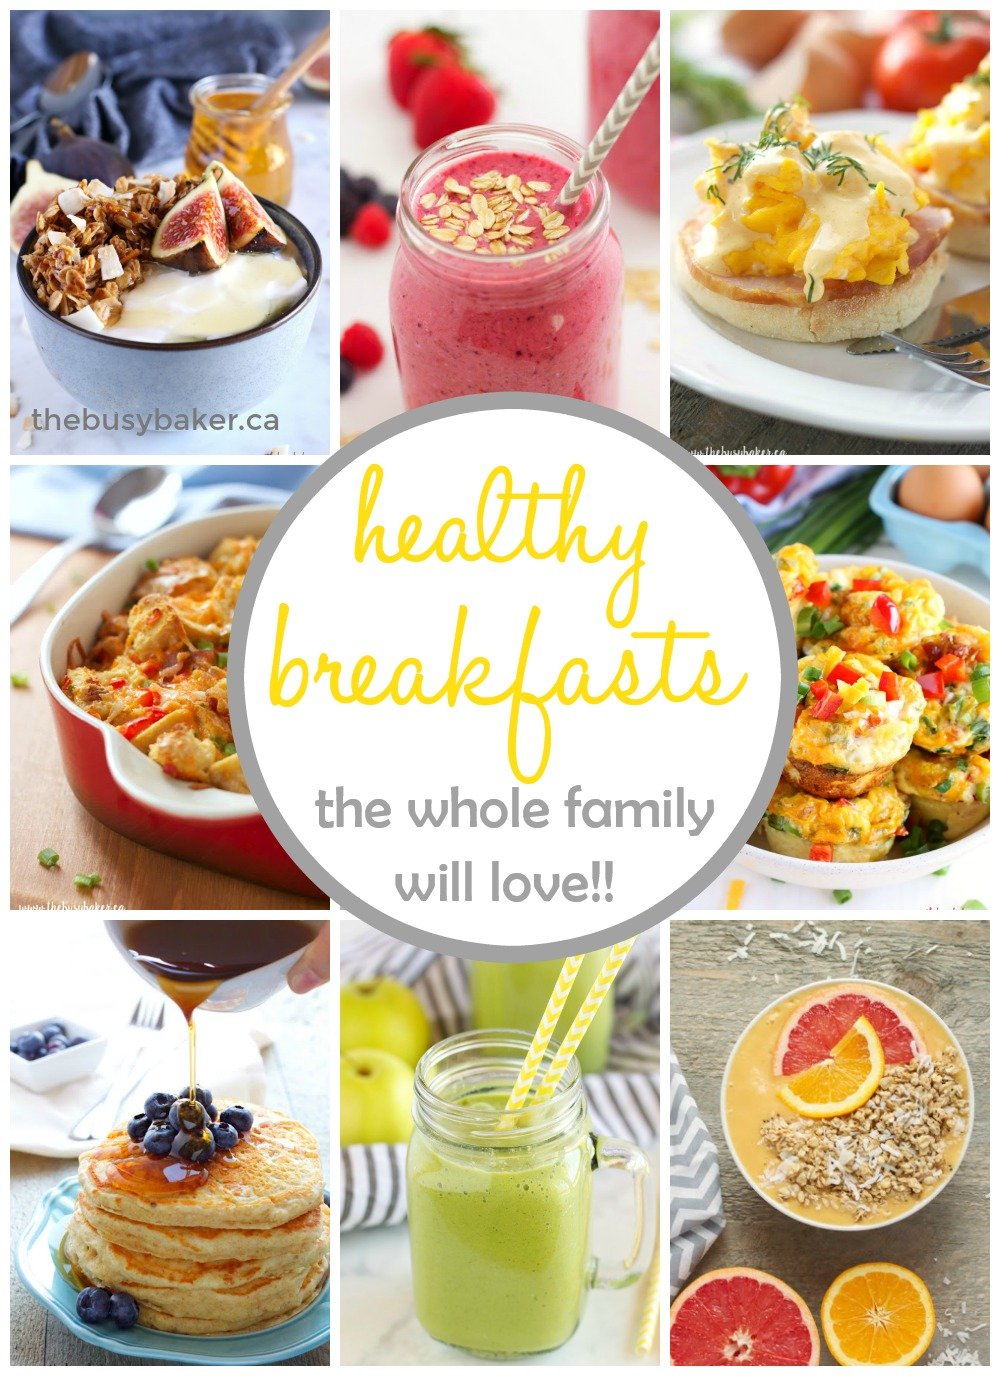 family breakfast ideas